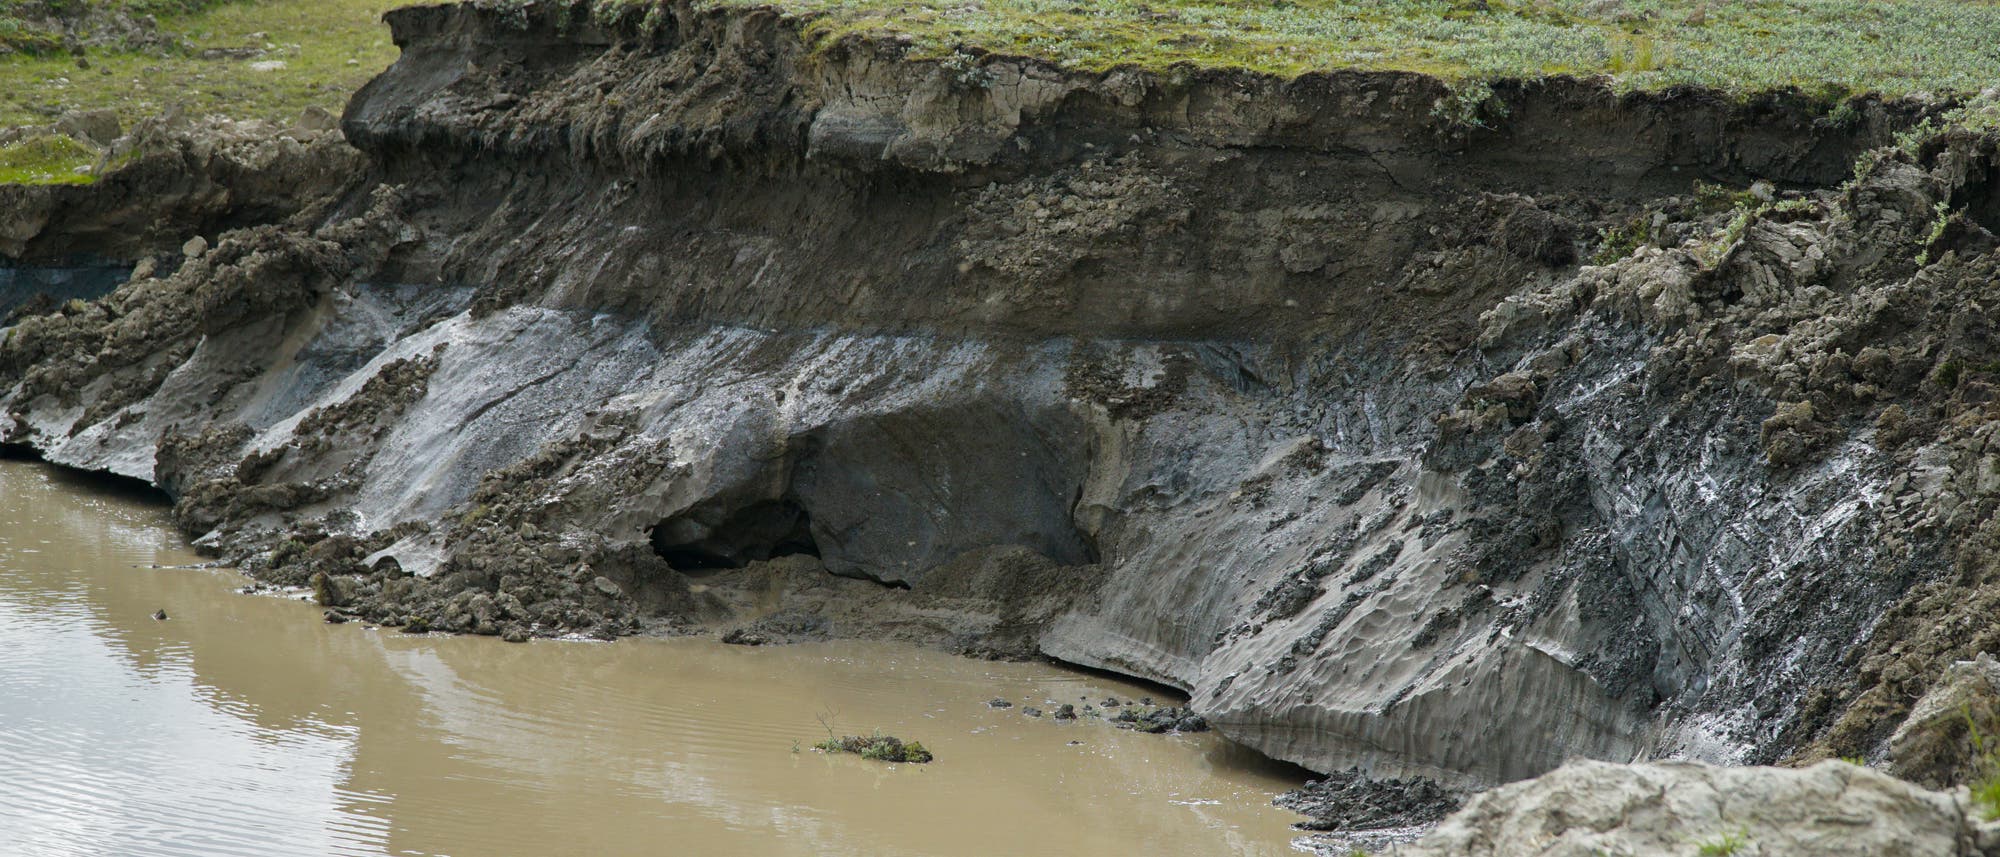 Die Steilwand eines Kraters in Sibirien, der vermutlich von einer geschmolzenen Eislinse hinterlassen wurde. In der Steilwand erkennt man noch die Permafrost-Schichten.